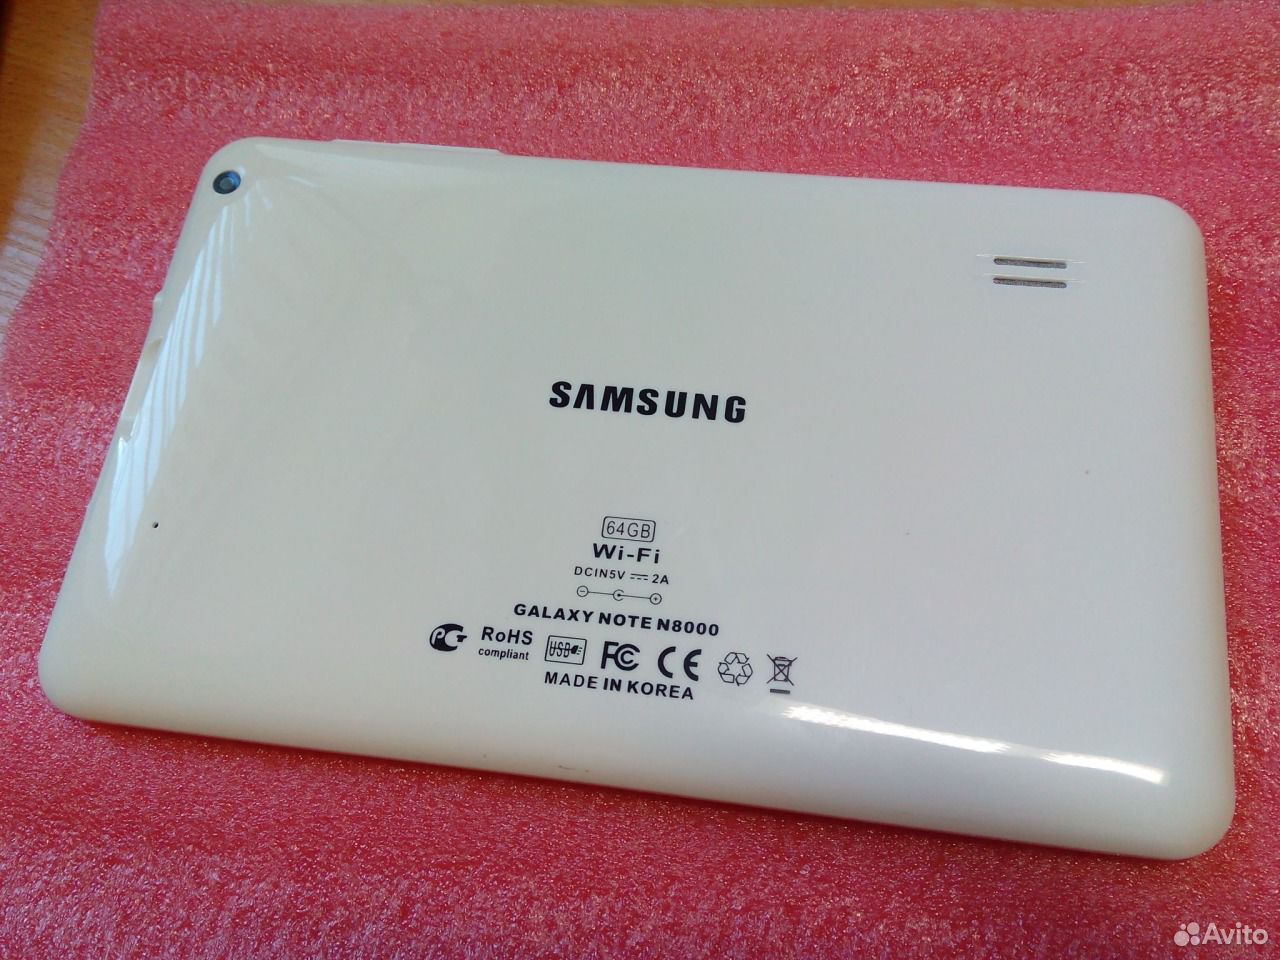 Galaxy note 8000. Samsung Galaxy Note 8000 64gb. Samsung Note n8000 64gb. Samsung Galaxy Note n8000 64gb китайский. Планшет Samsung Galaxy Note n8000 64gb.